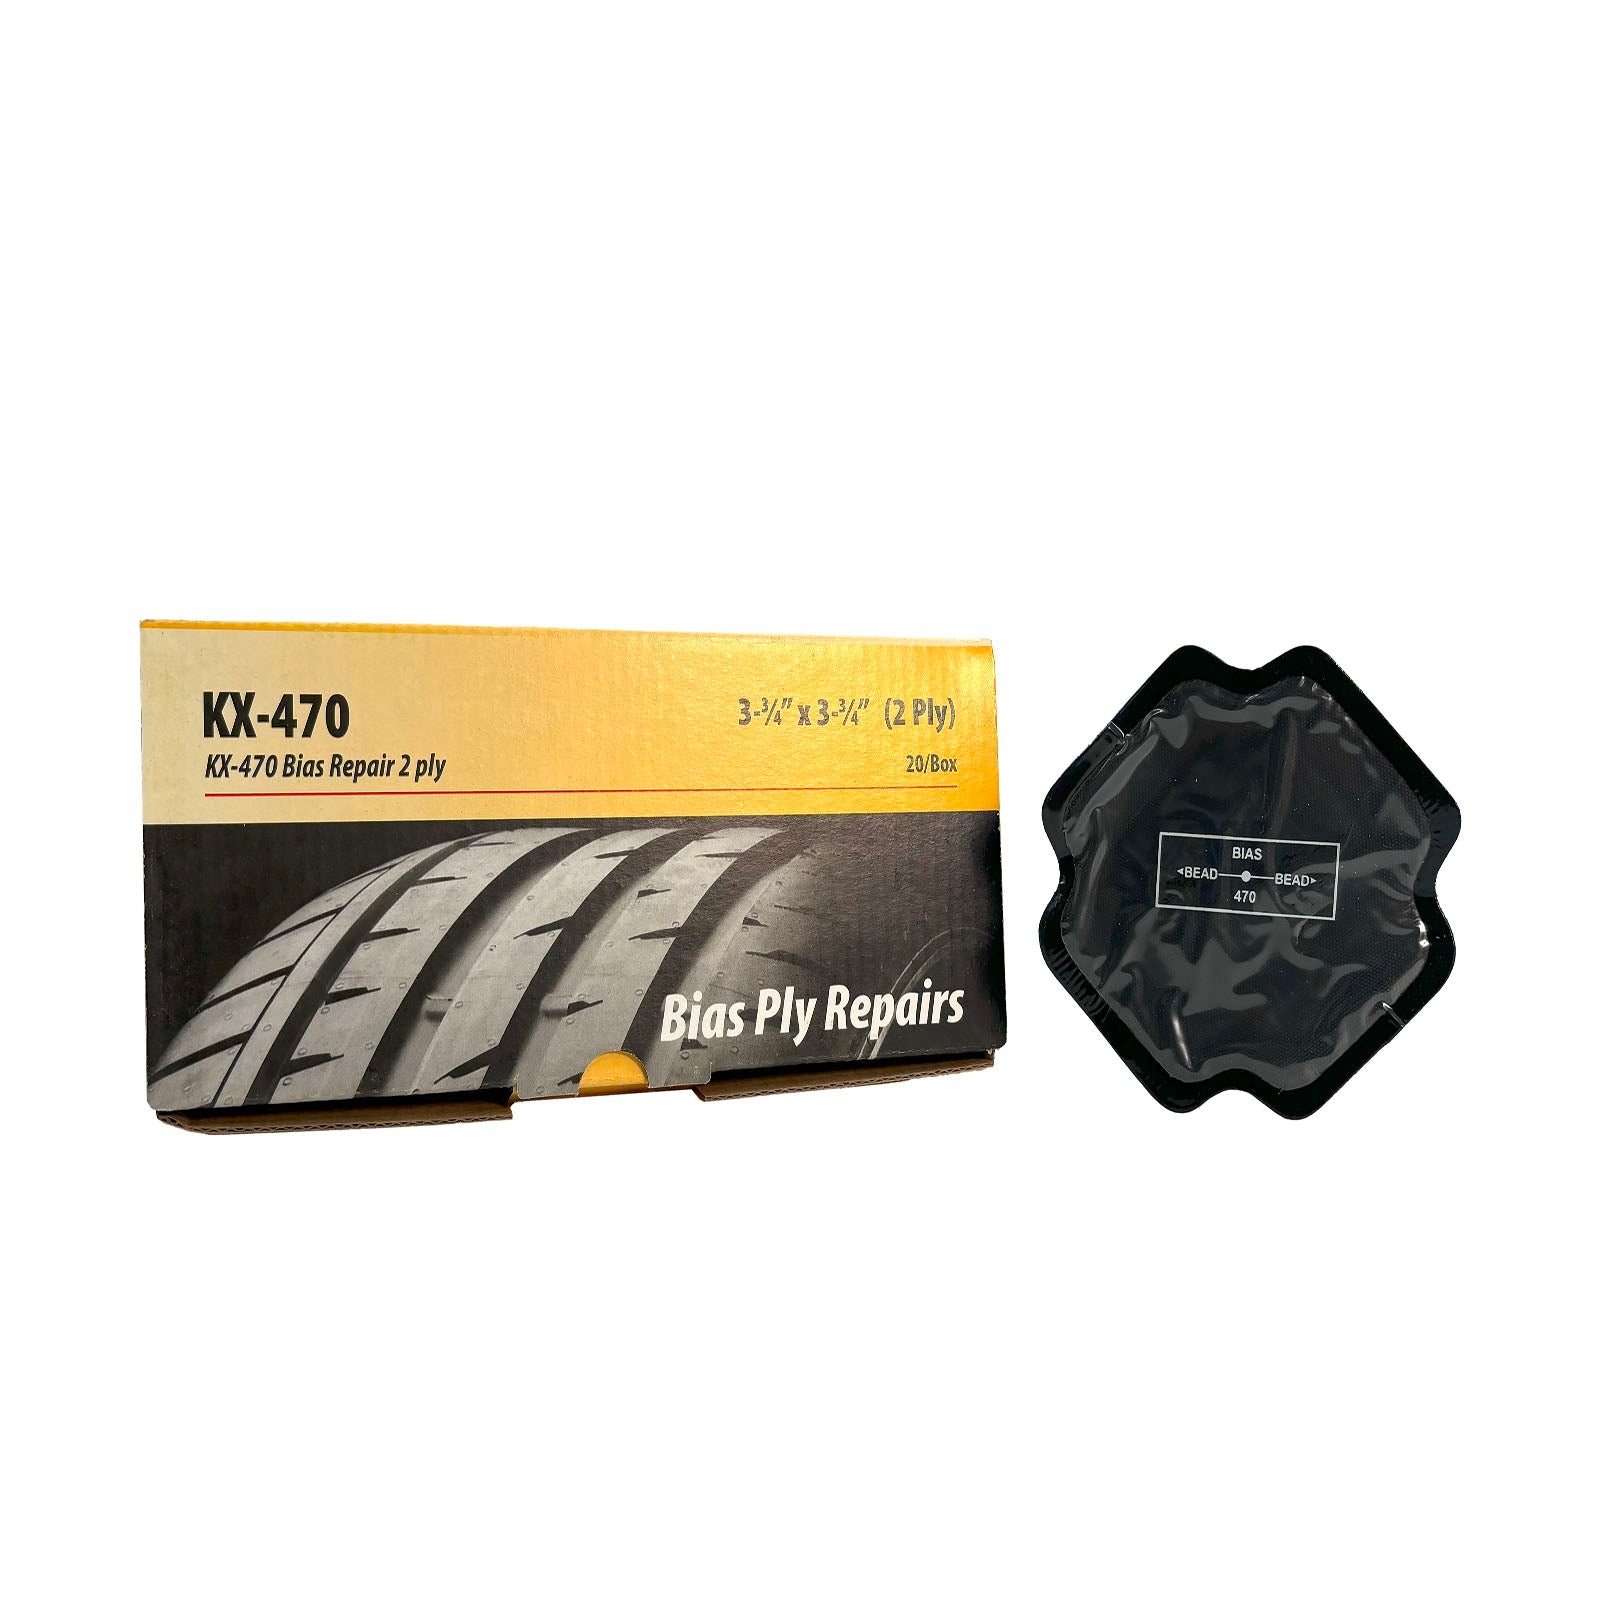 Kex 470 Bias Ply Tire Repair Unit, 3-3/4", 2 Ply (20 bx)